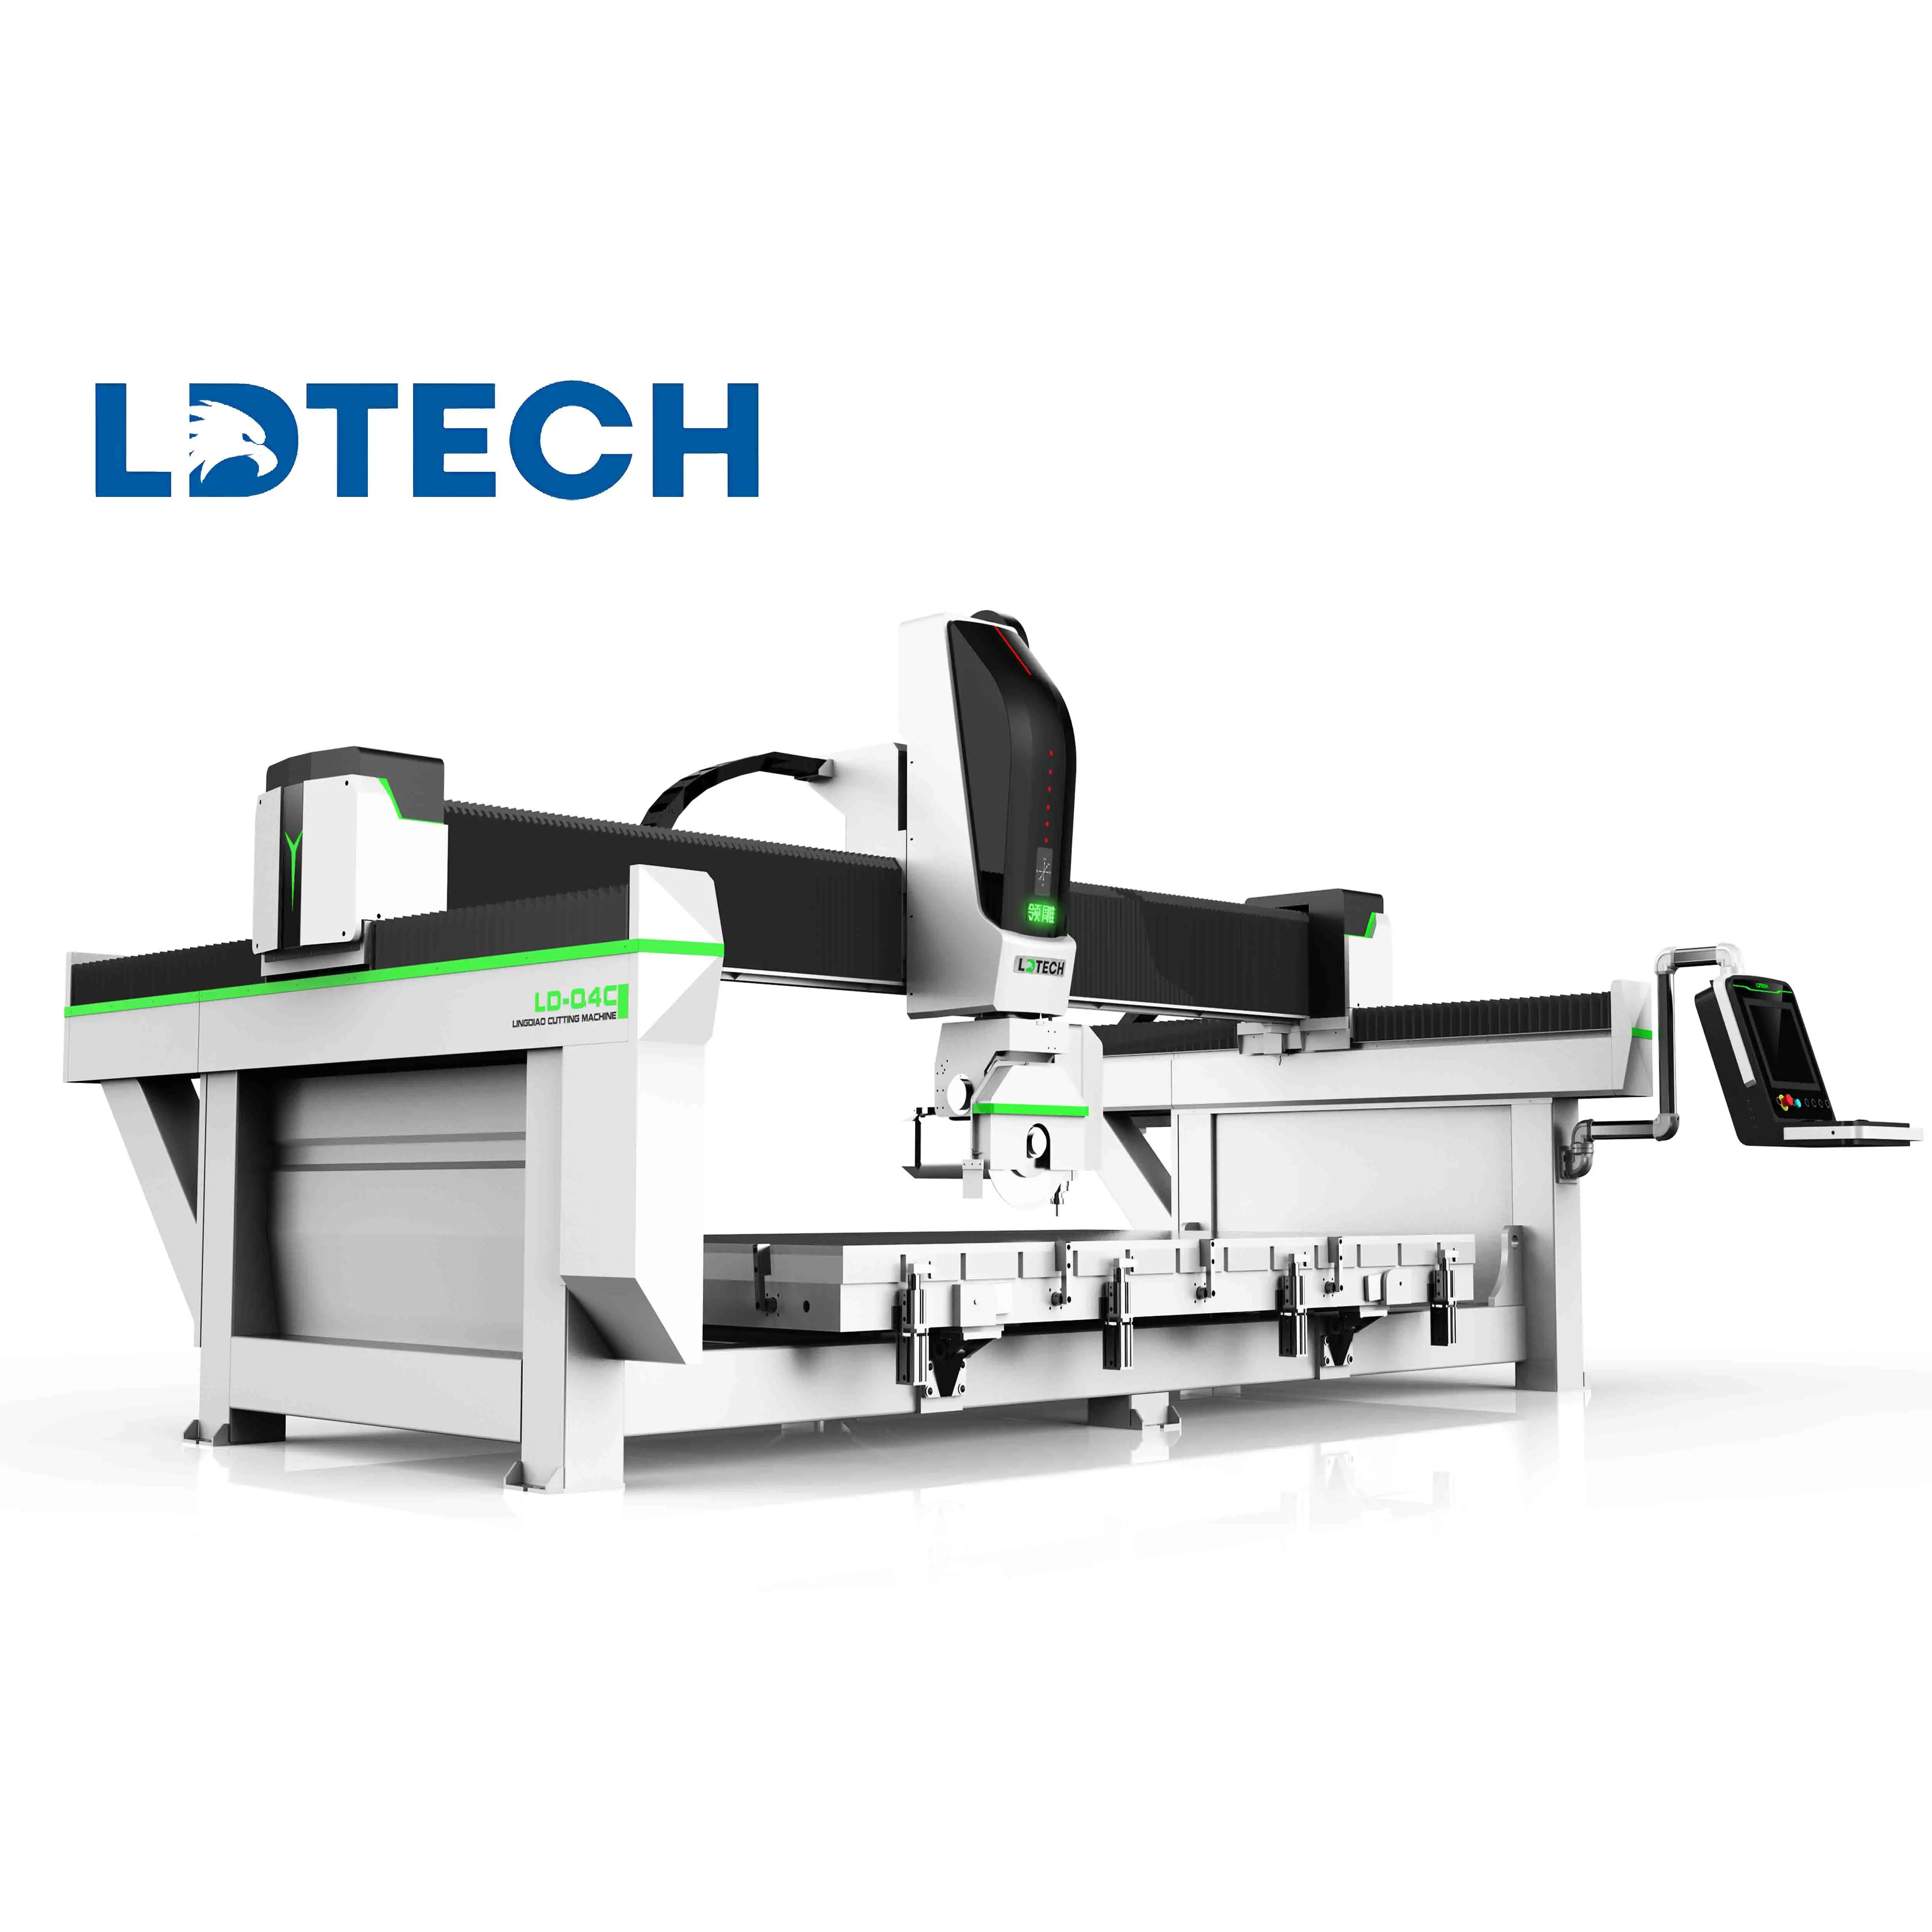 ماكينة تقطيع CNC للصخور والنشر والجوانب ذات 3 4 5 محاور من LDTech، جهاز توجيه CNC لقطع ألواح الرخام والجرانيت والكوارتز